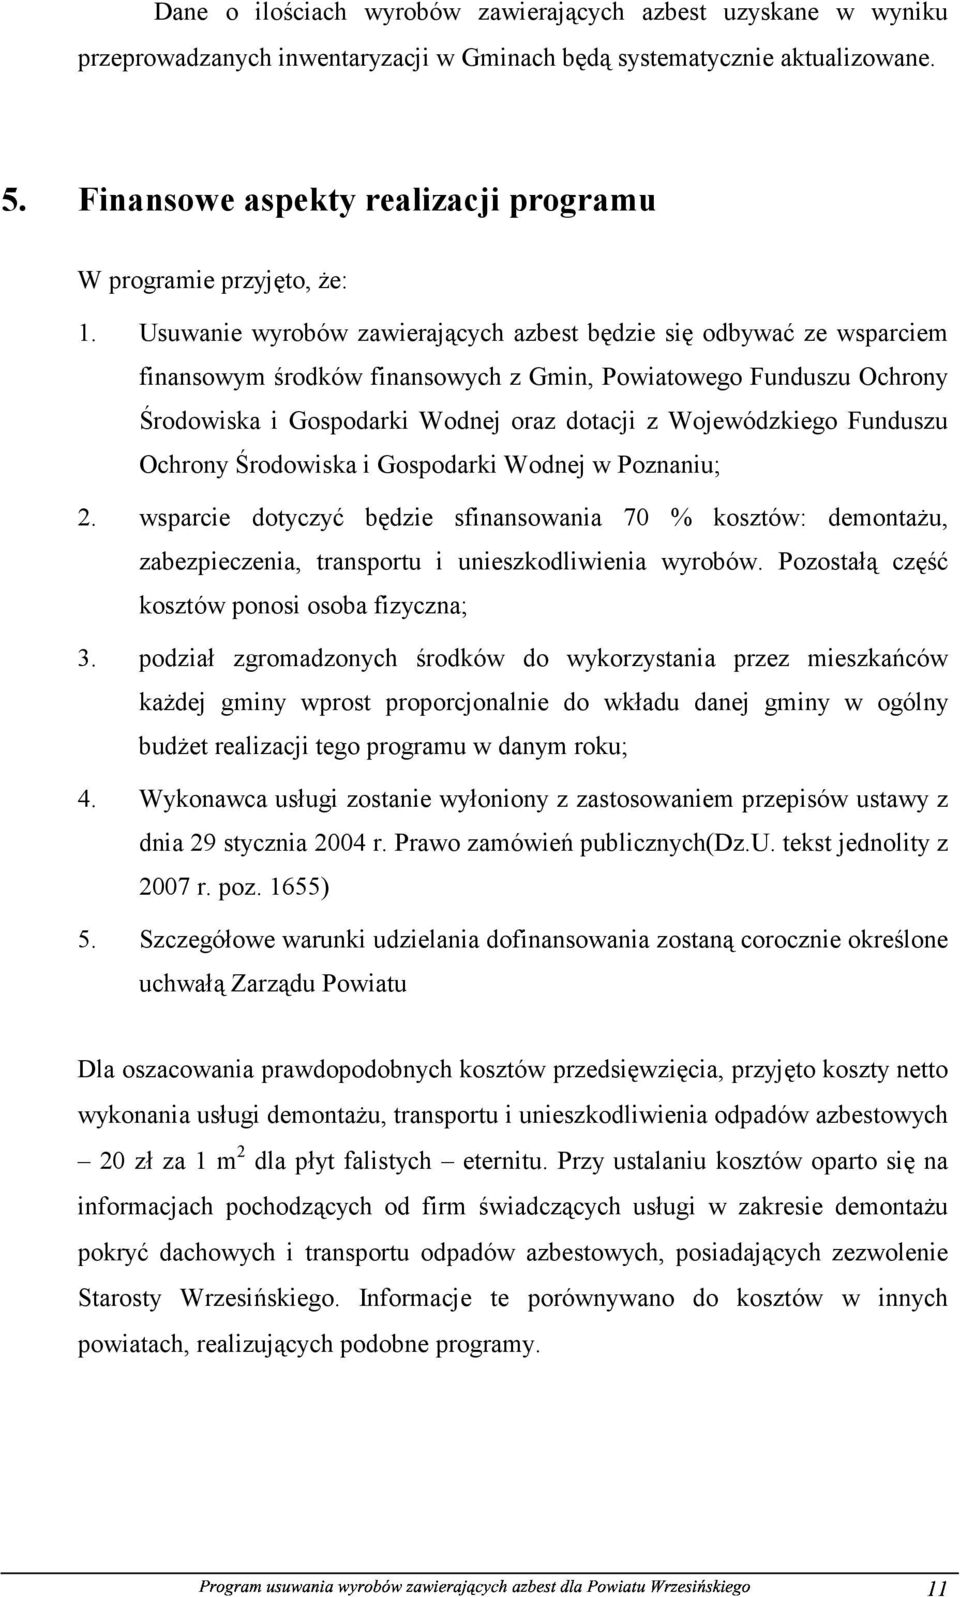 Usuwanie wyrobów zawierających azbest będzie się odbywać ze wsparciem finansowym środków finansowych z Gmin, Powiatowego Funduszu Ochrony Środowiska i Gospodarki Wodnej oraz dotacji z Wojewódzkiego